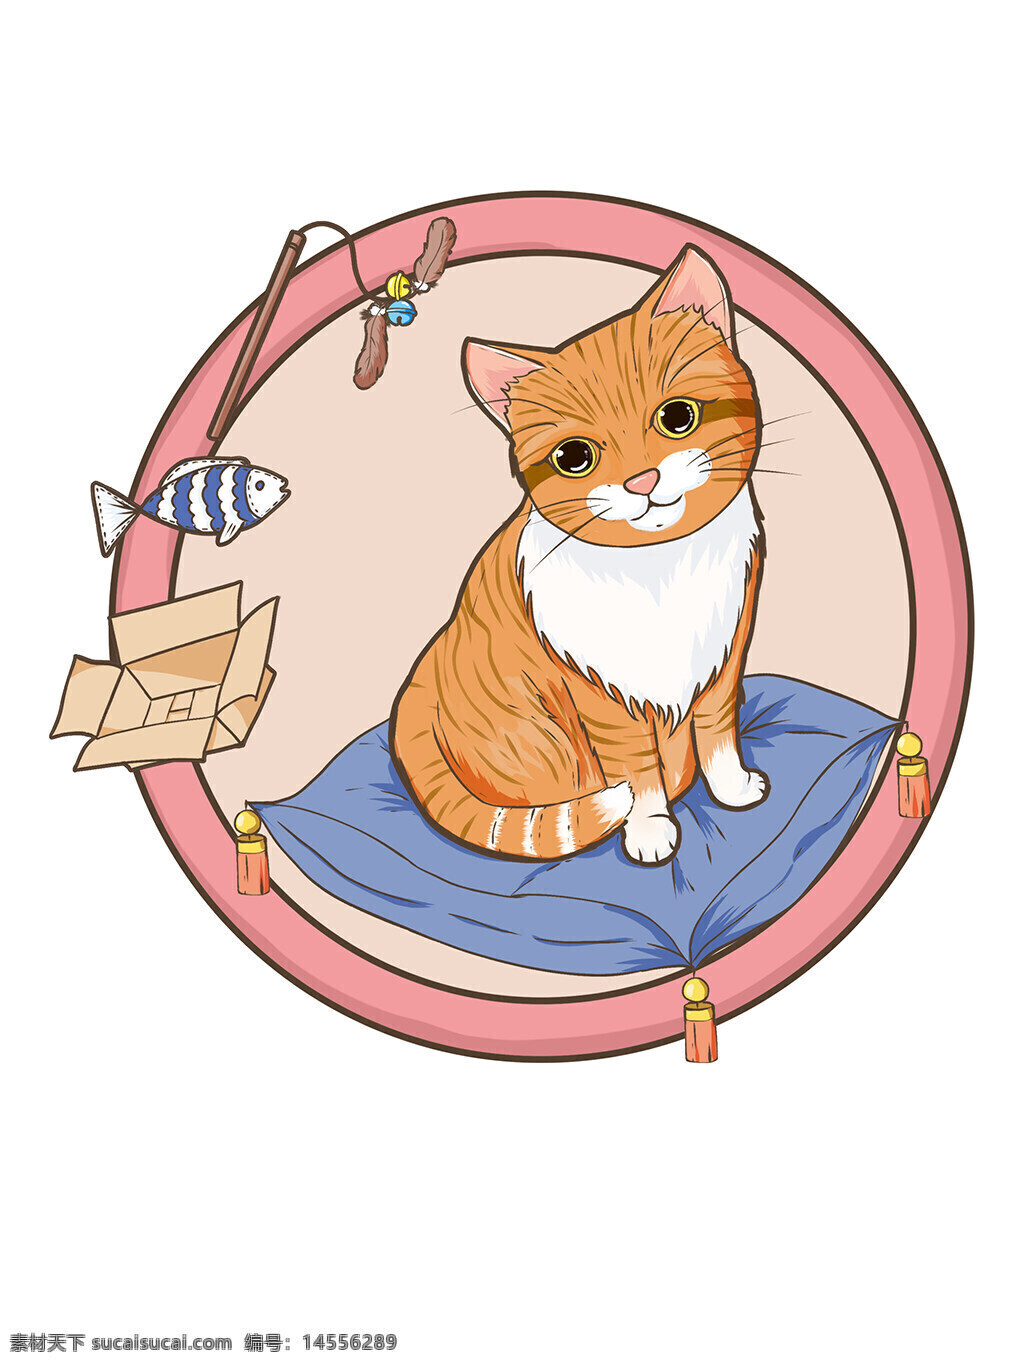 猫咪 猫 宠物猫 橘猫 卡通猫 徽章 小猫咪 大橘